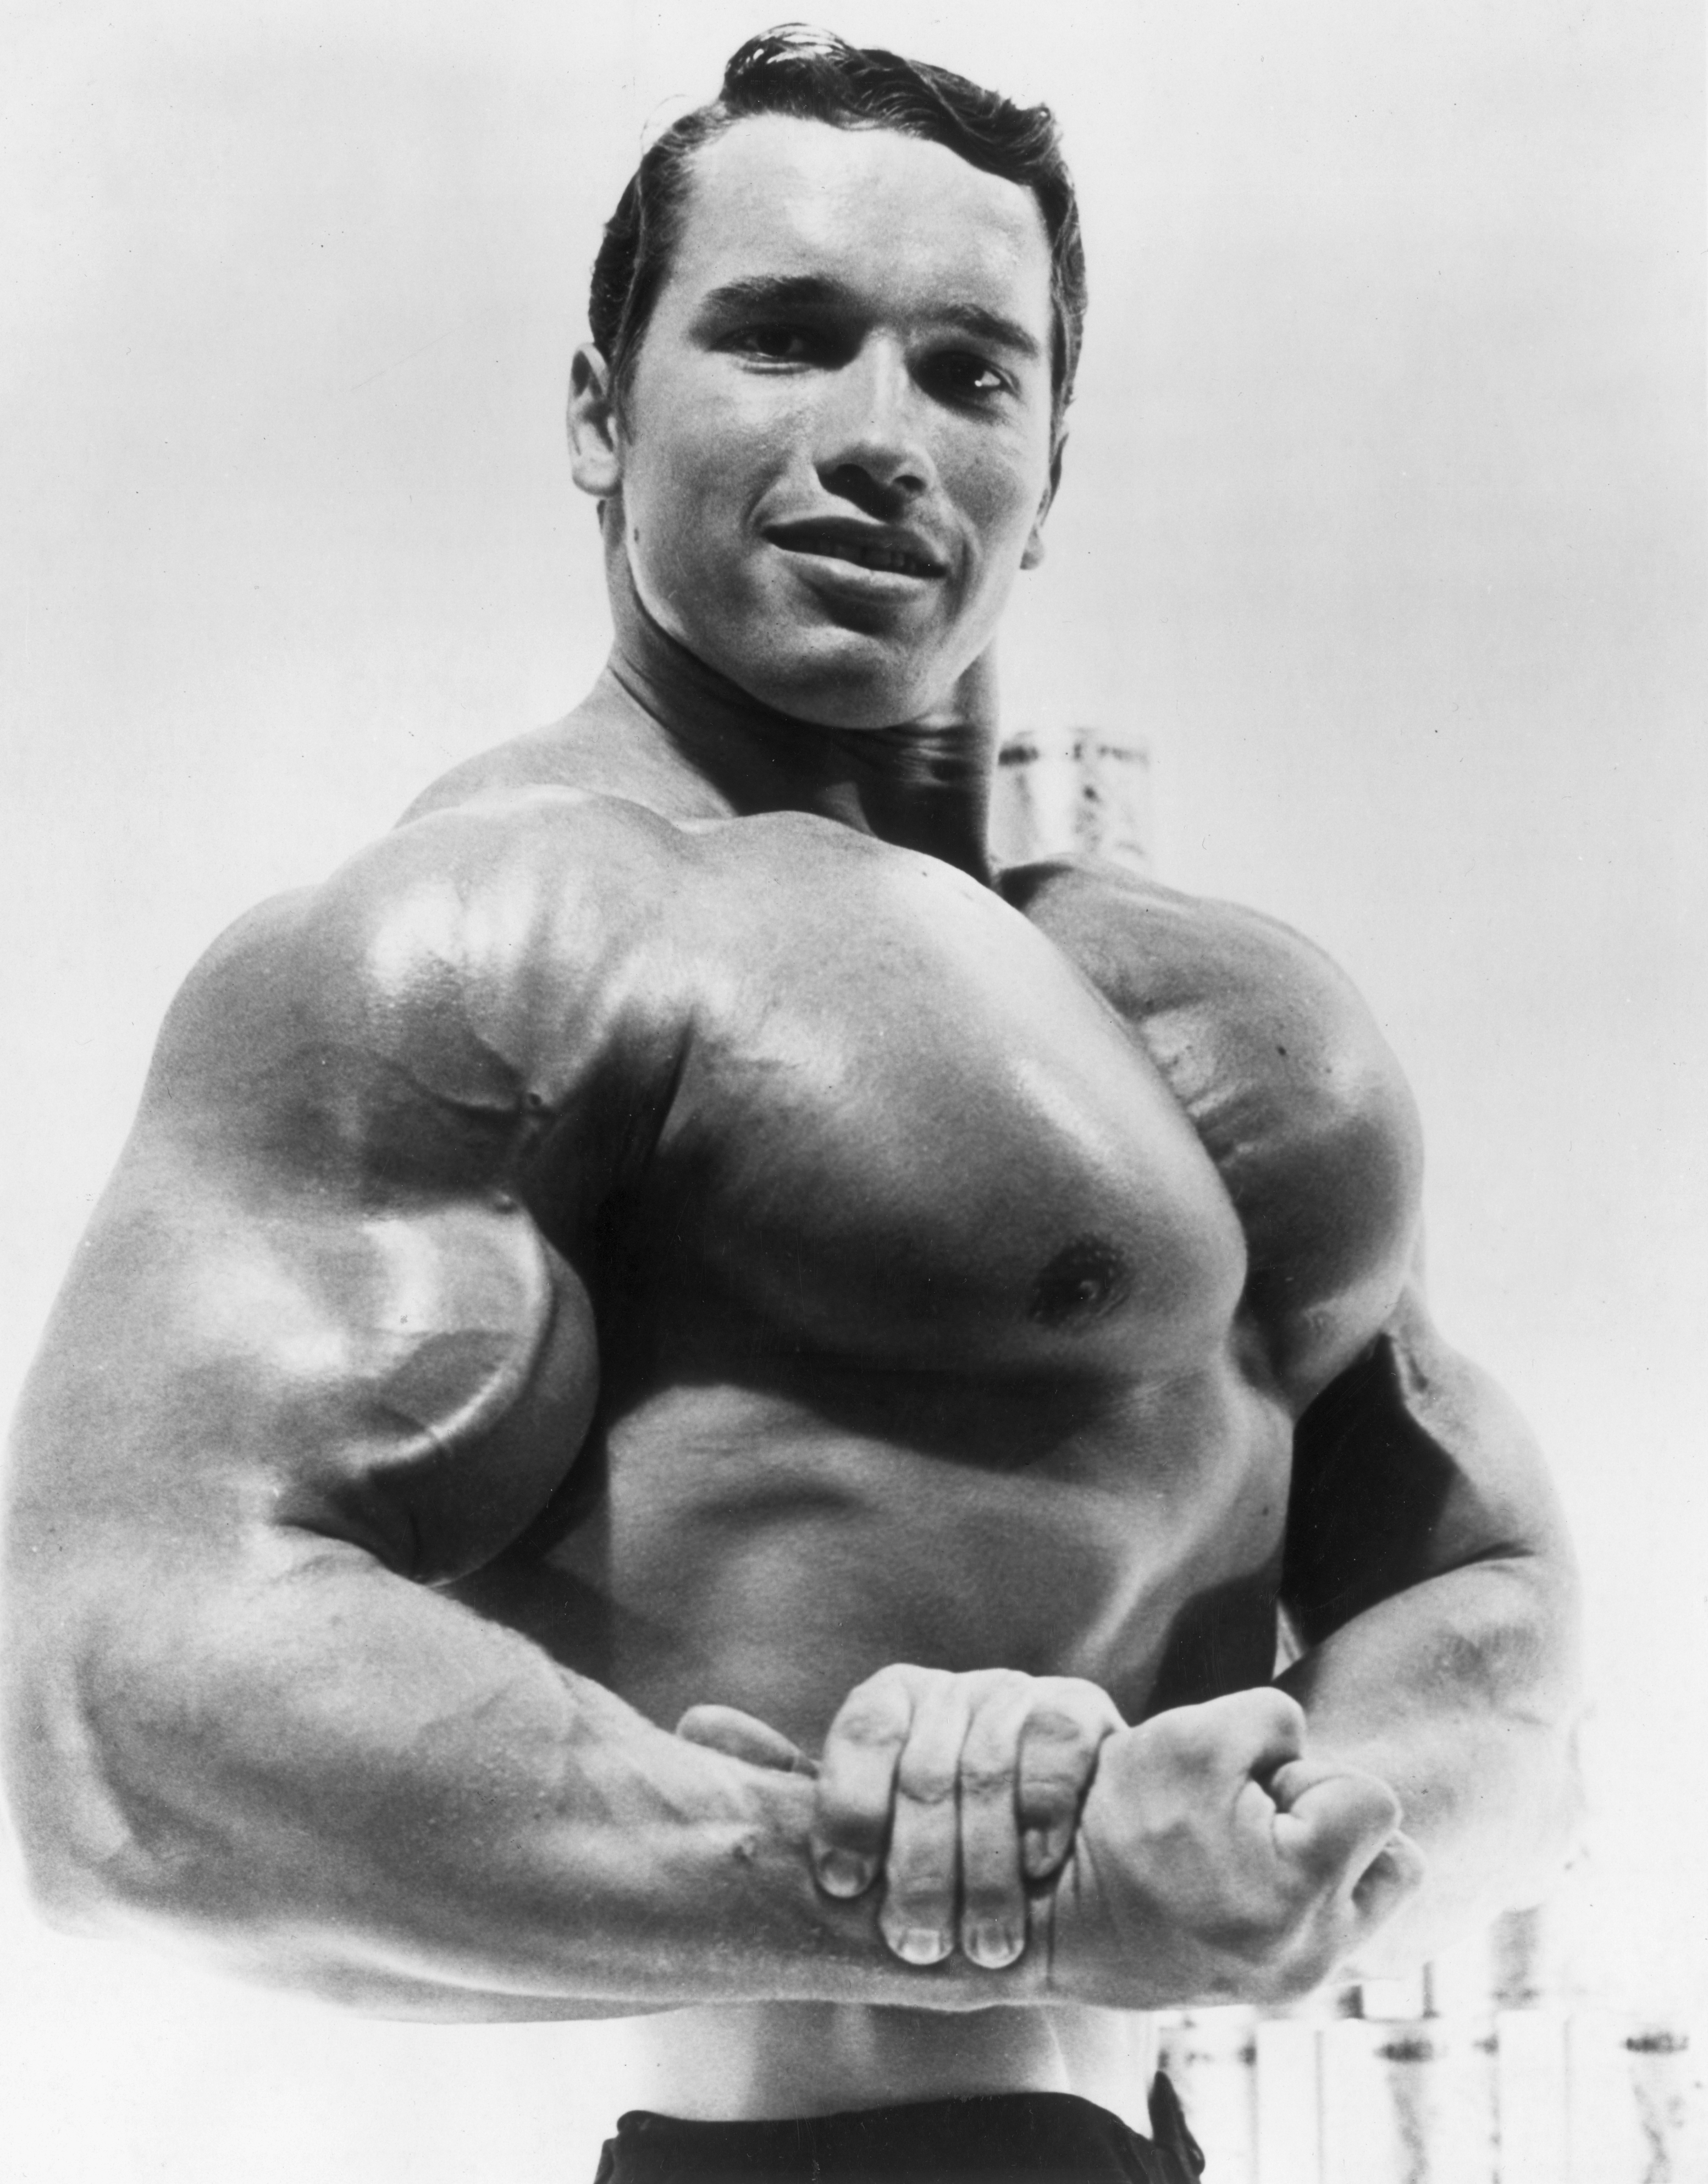 Una foto de 1967: Arnold Schwarzenegger posaba para una publicidad alemana de un alimento alto en proteínas  (Photo by Hulton Archive/Getty Images)